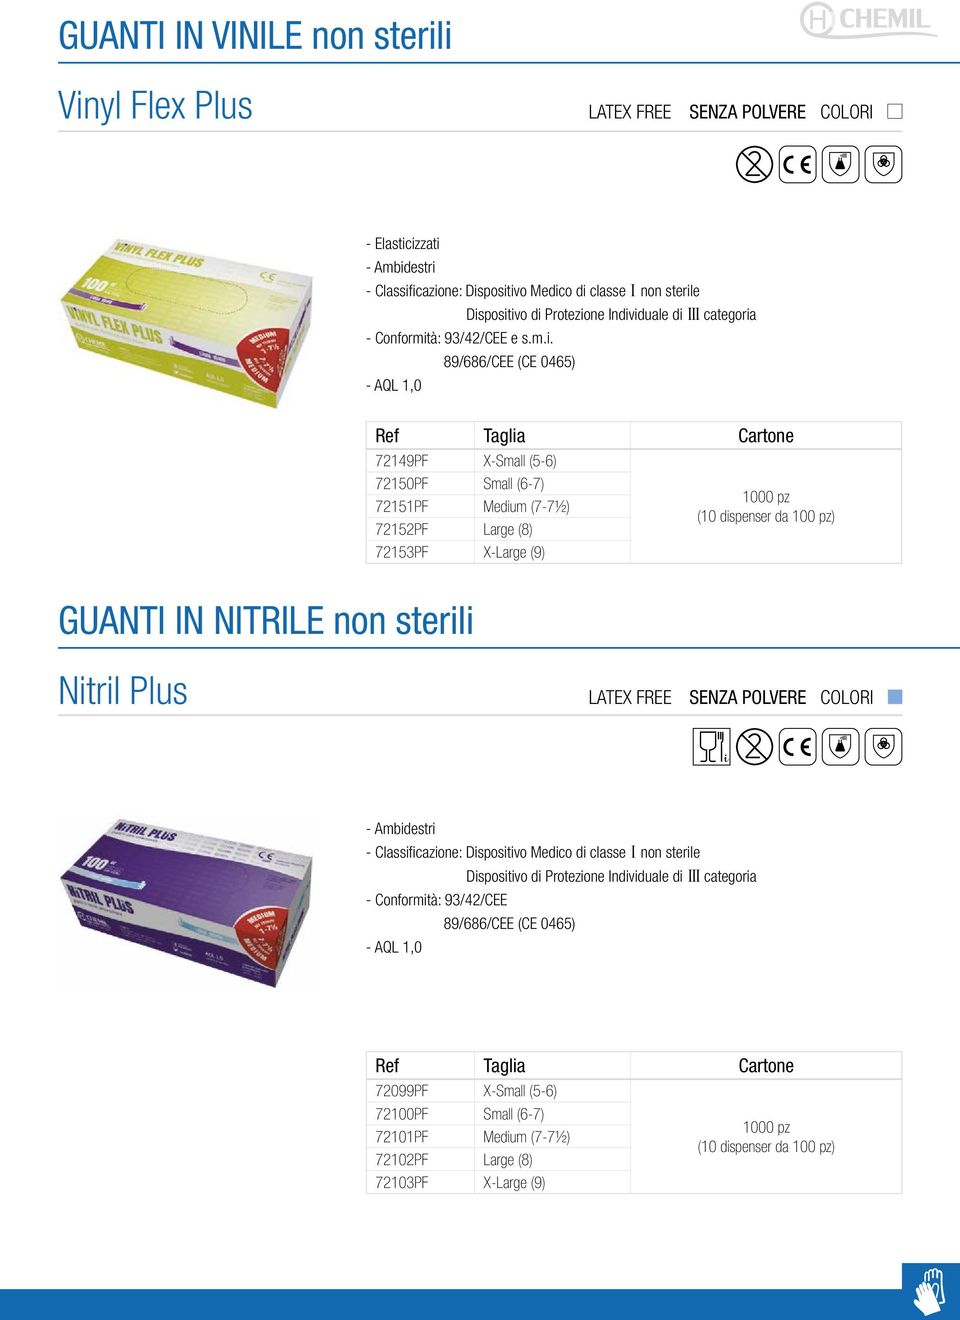 GUANTI IN NITRILE non sterili Nitril Plus LATEX FREE Dispositivo di Protezione Individuale di III categoria - Conformità: 93/42/CEE 89/686/CEE